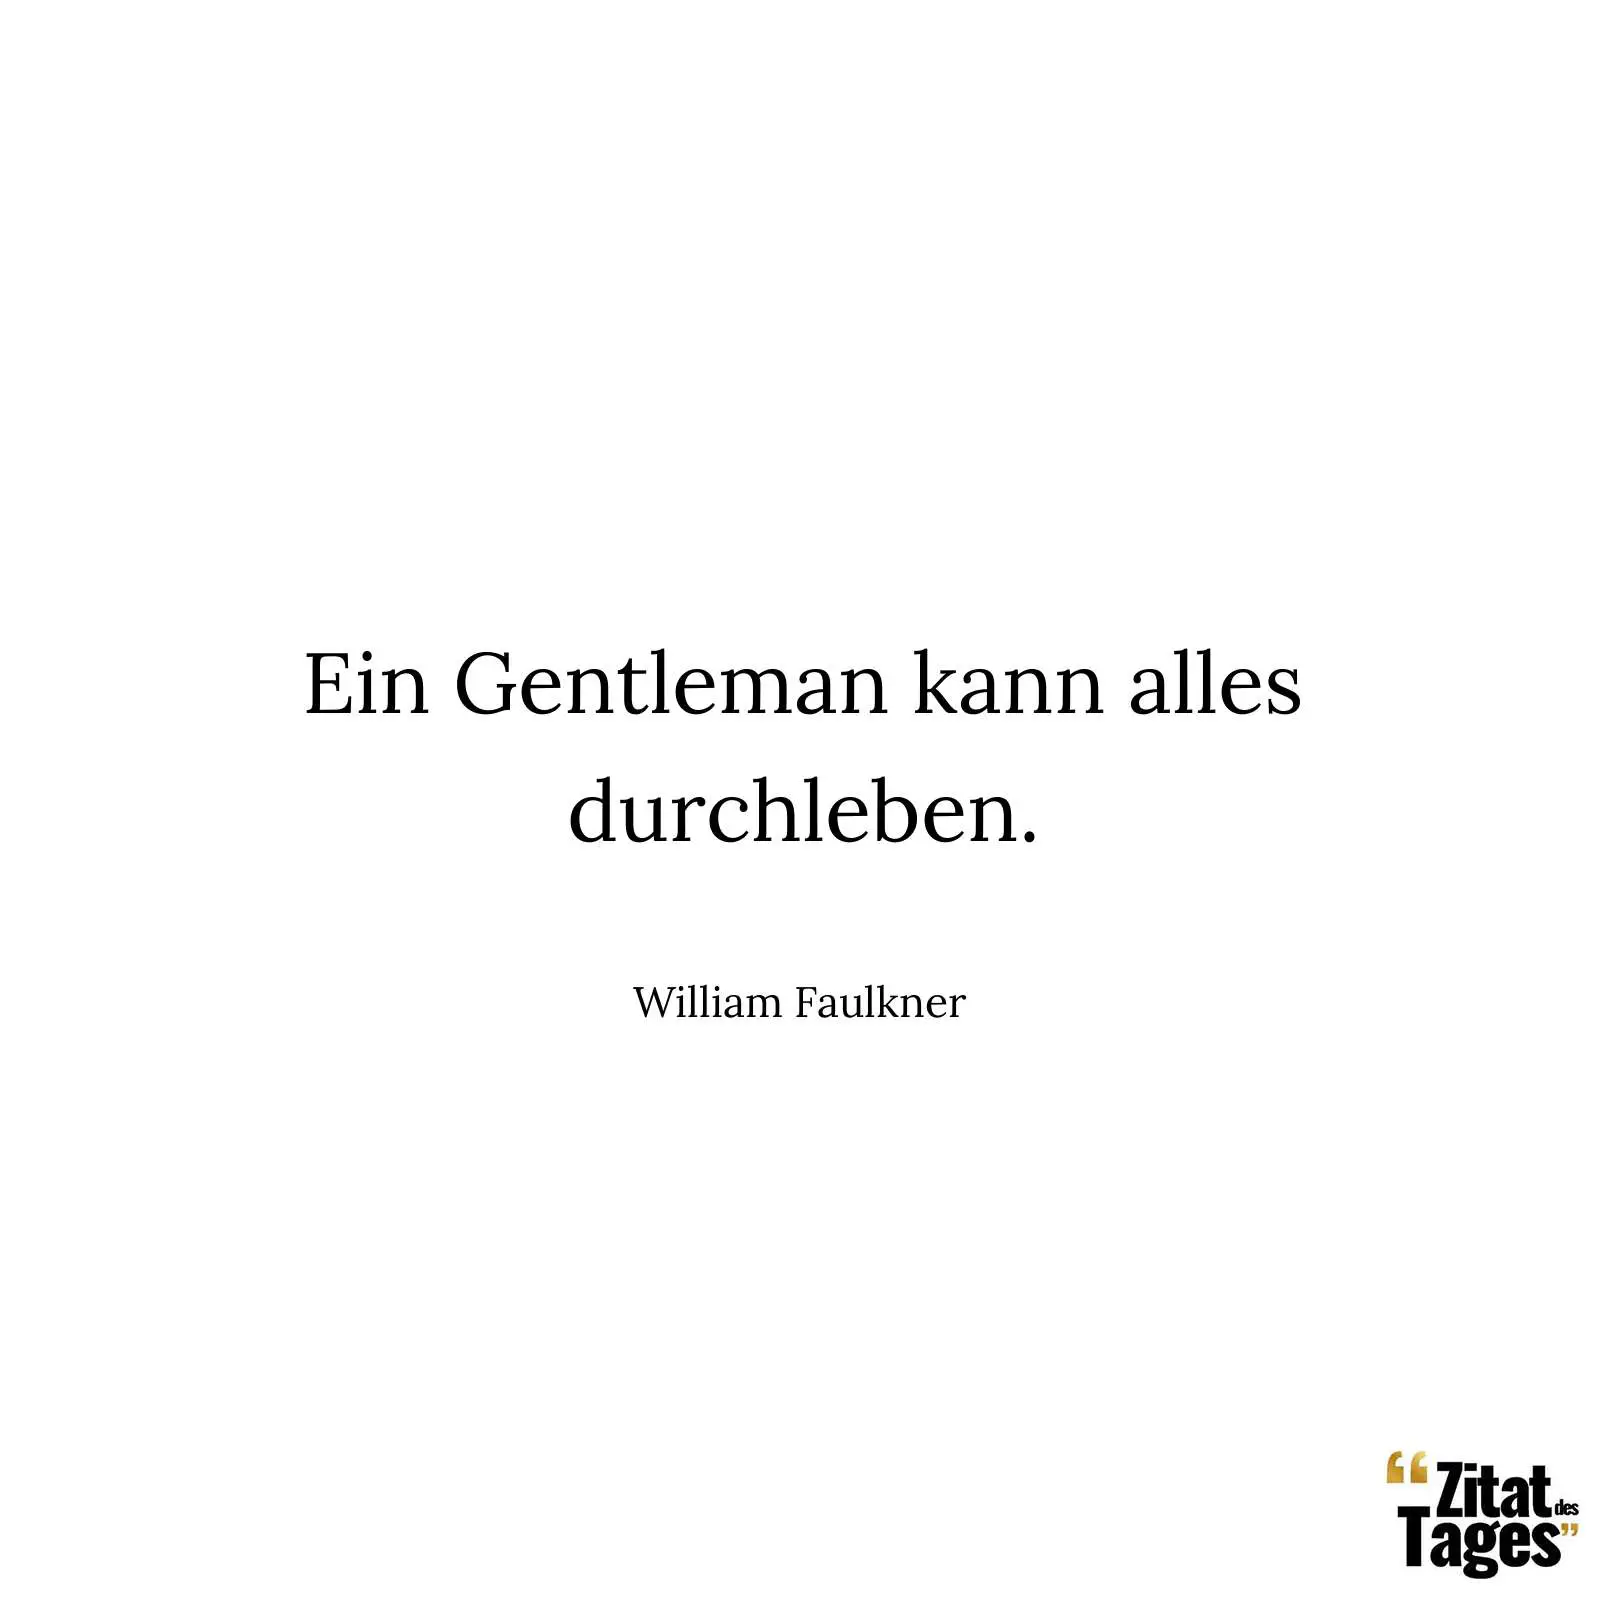 Ein Gentleman kann alles durchleben. - William Faulkner